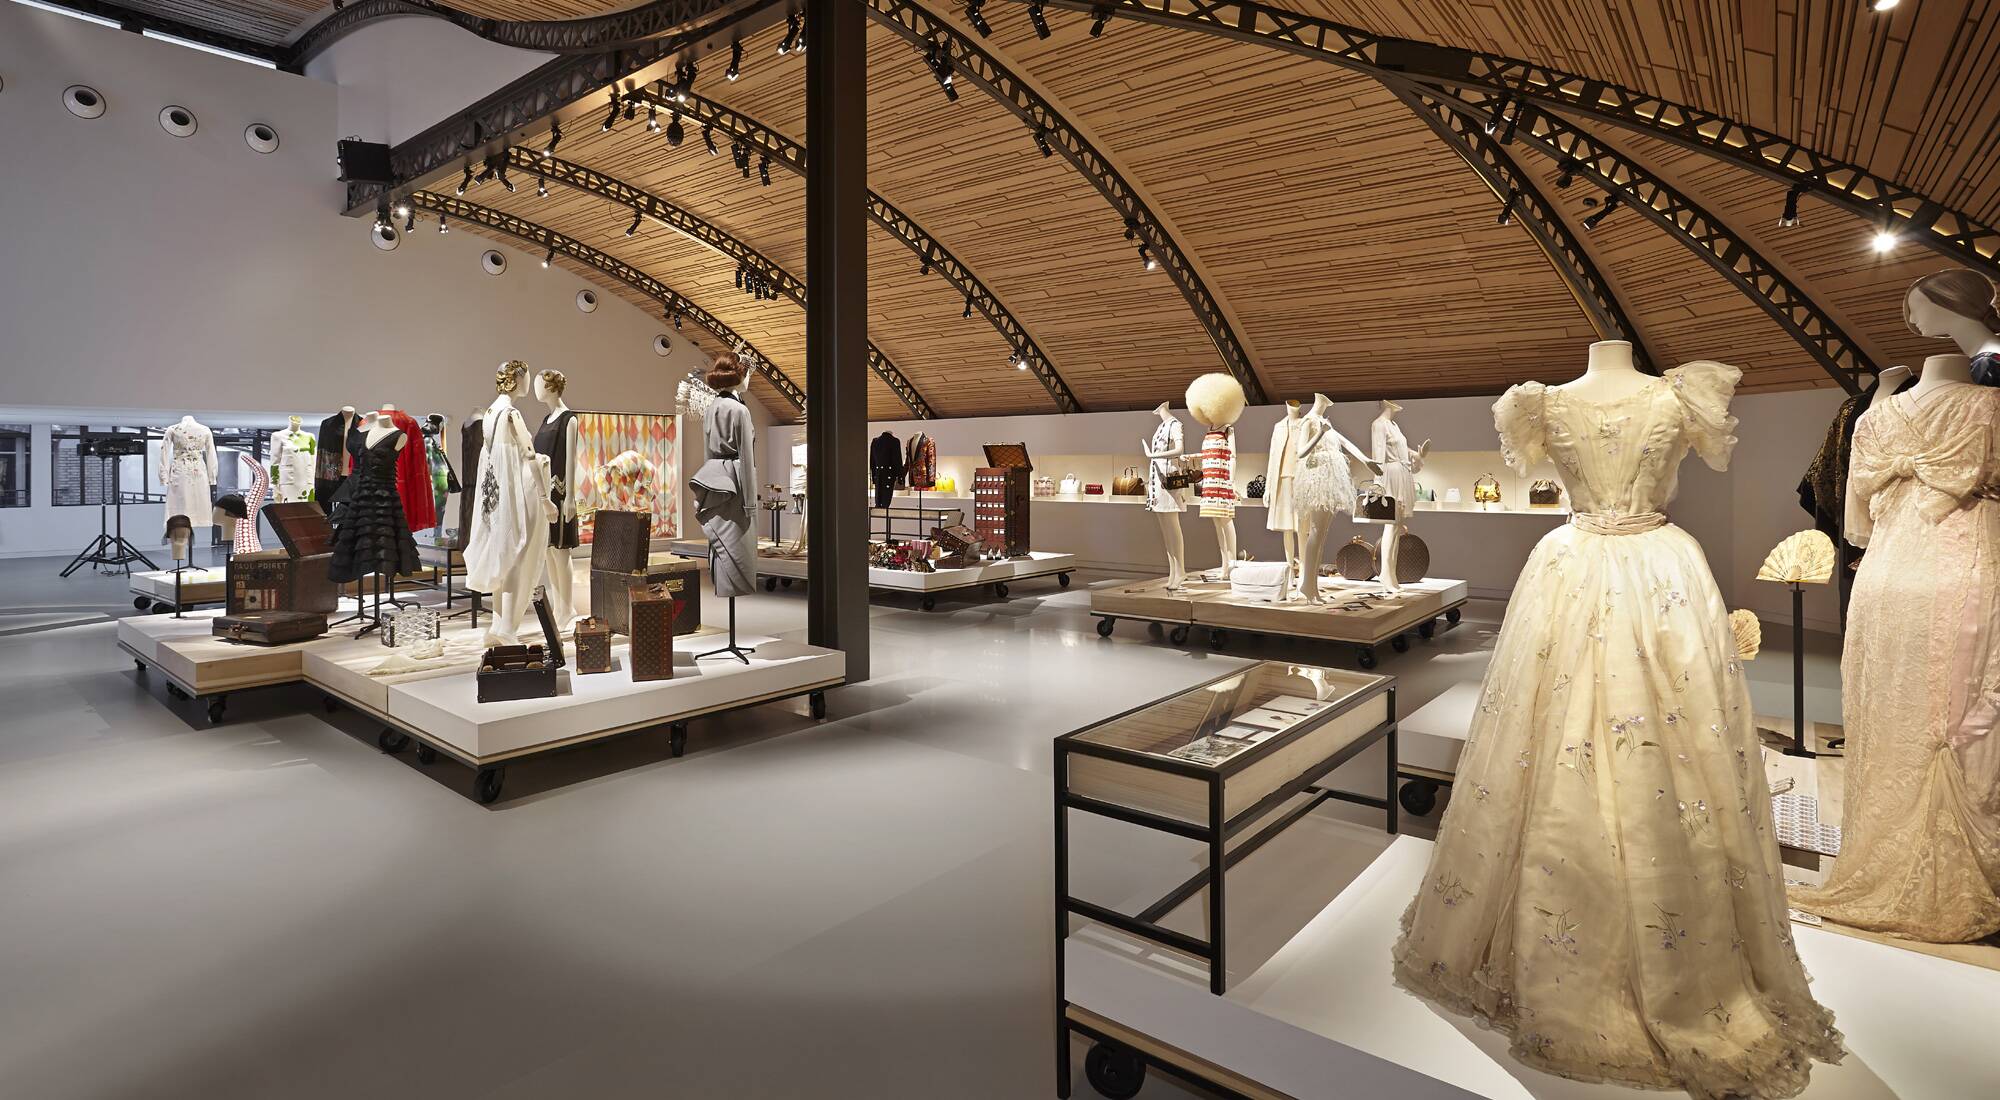 La Galerie d'Asnières, Louis Vuitton — My visit into the world of